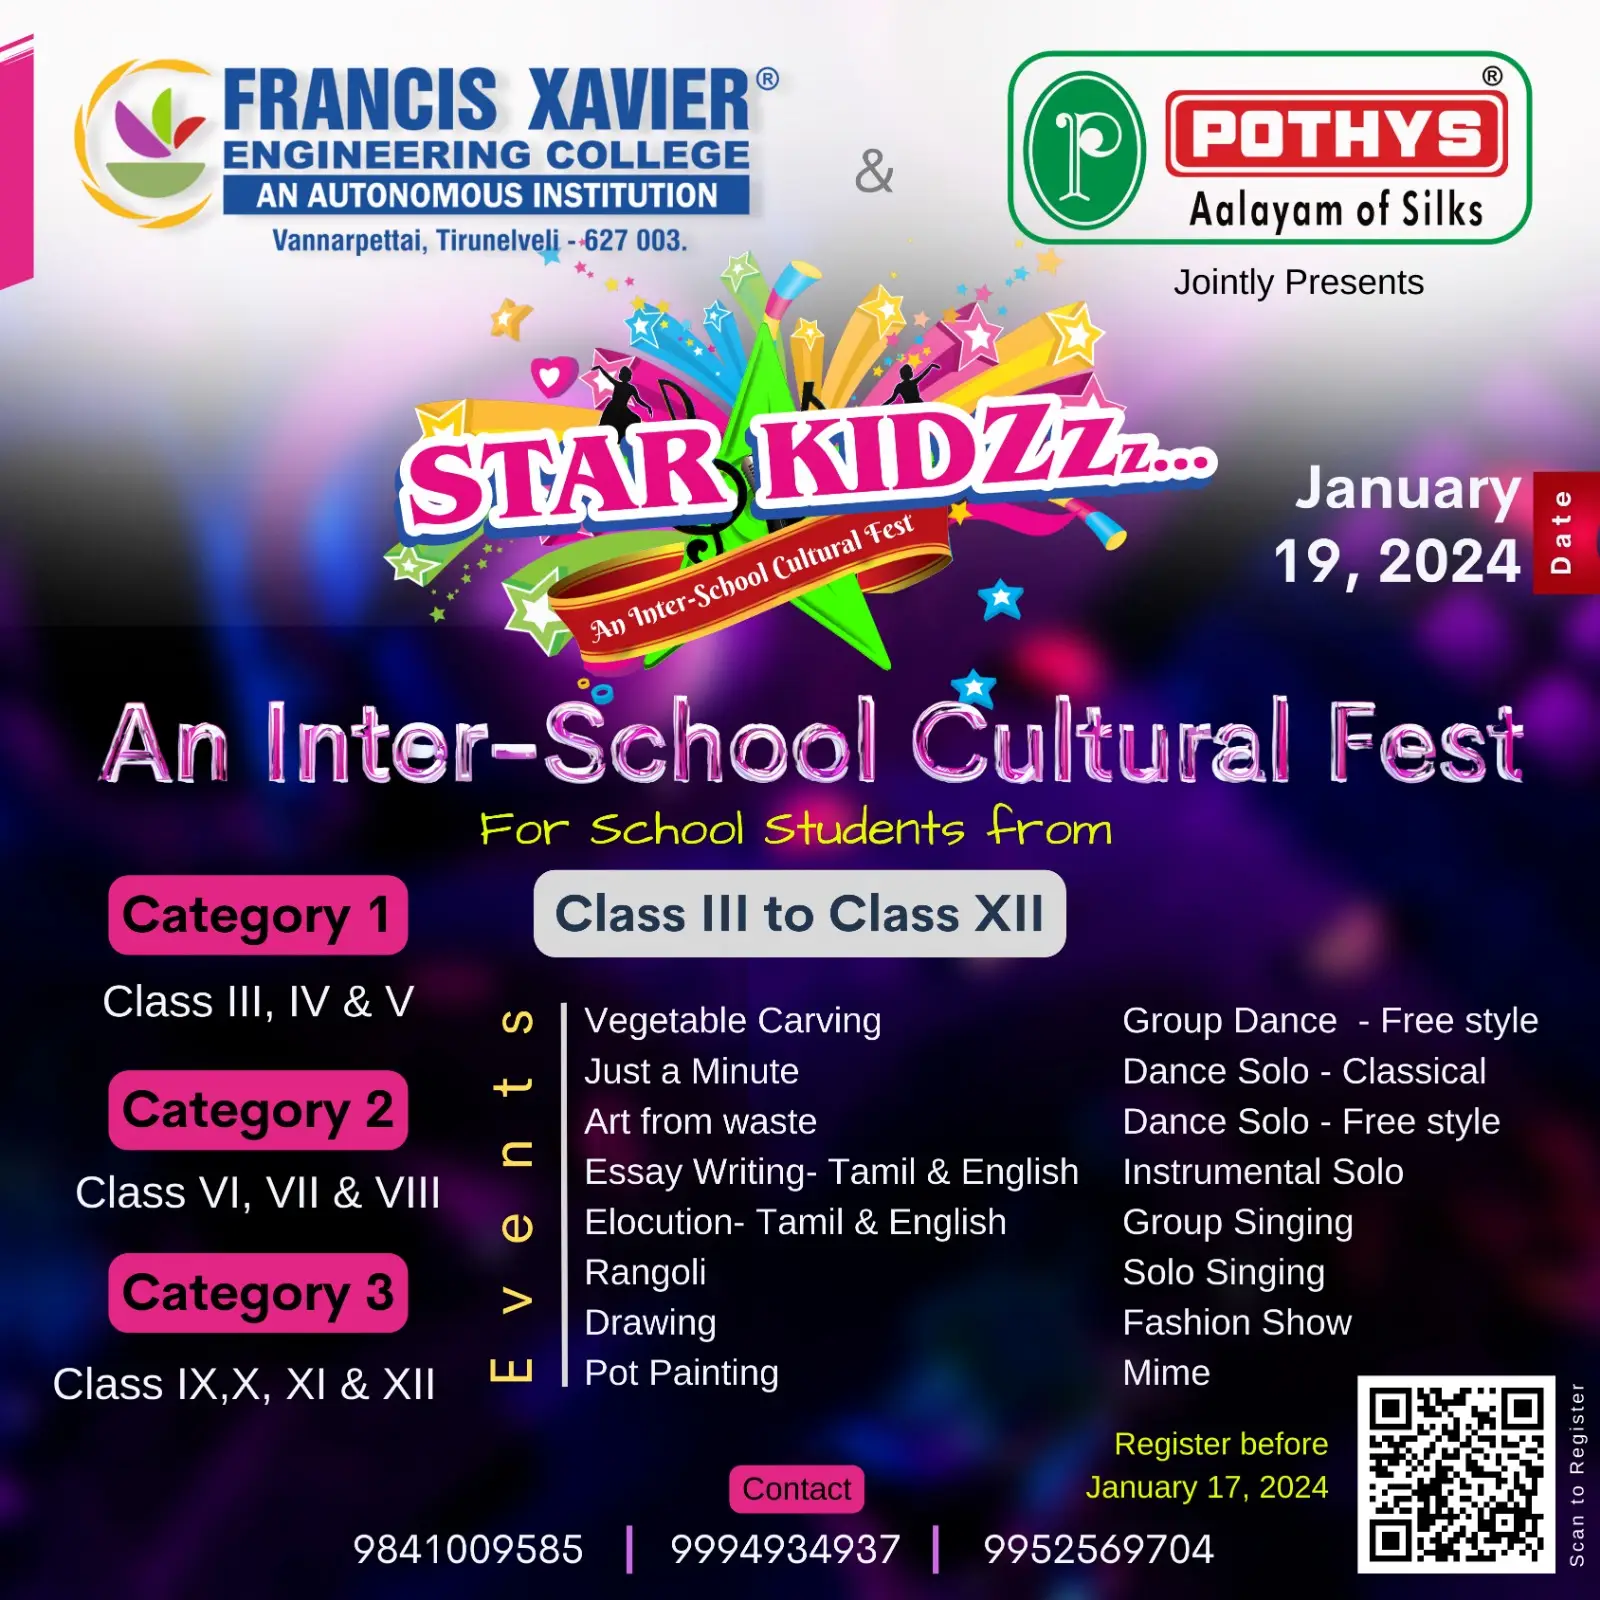 STAR KIDZ 2024 - An Inter-School Cultural Fest